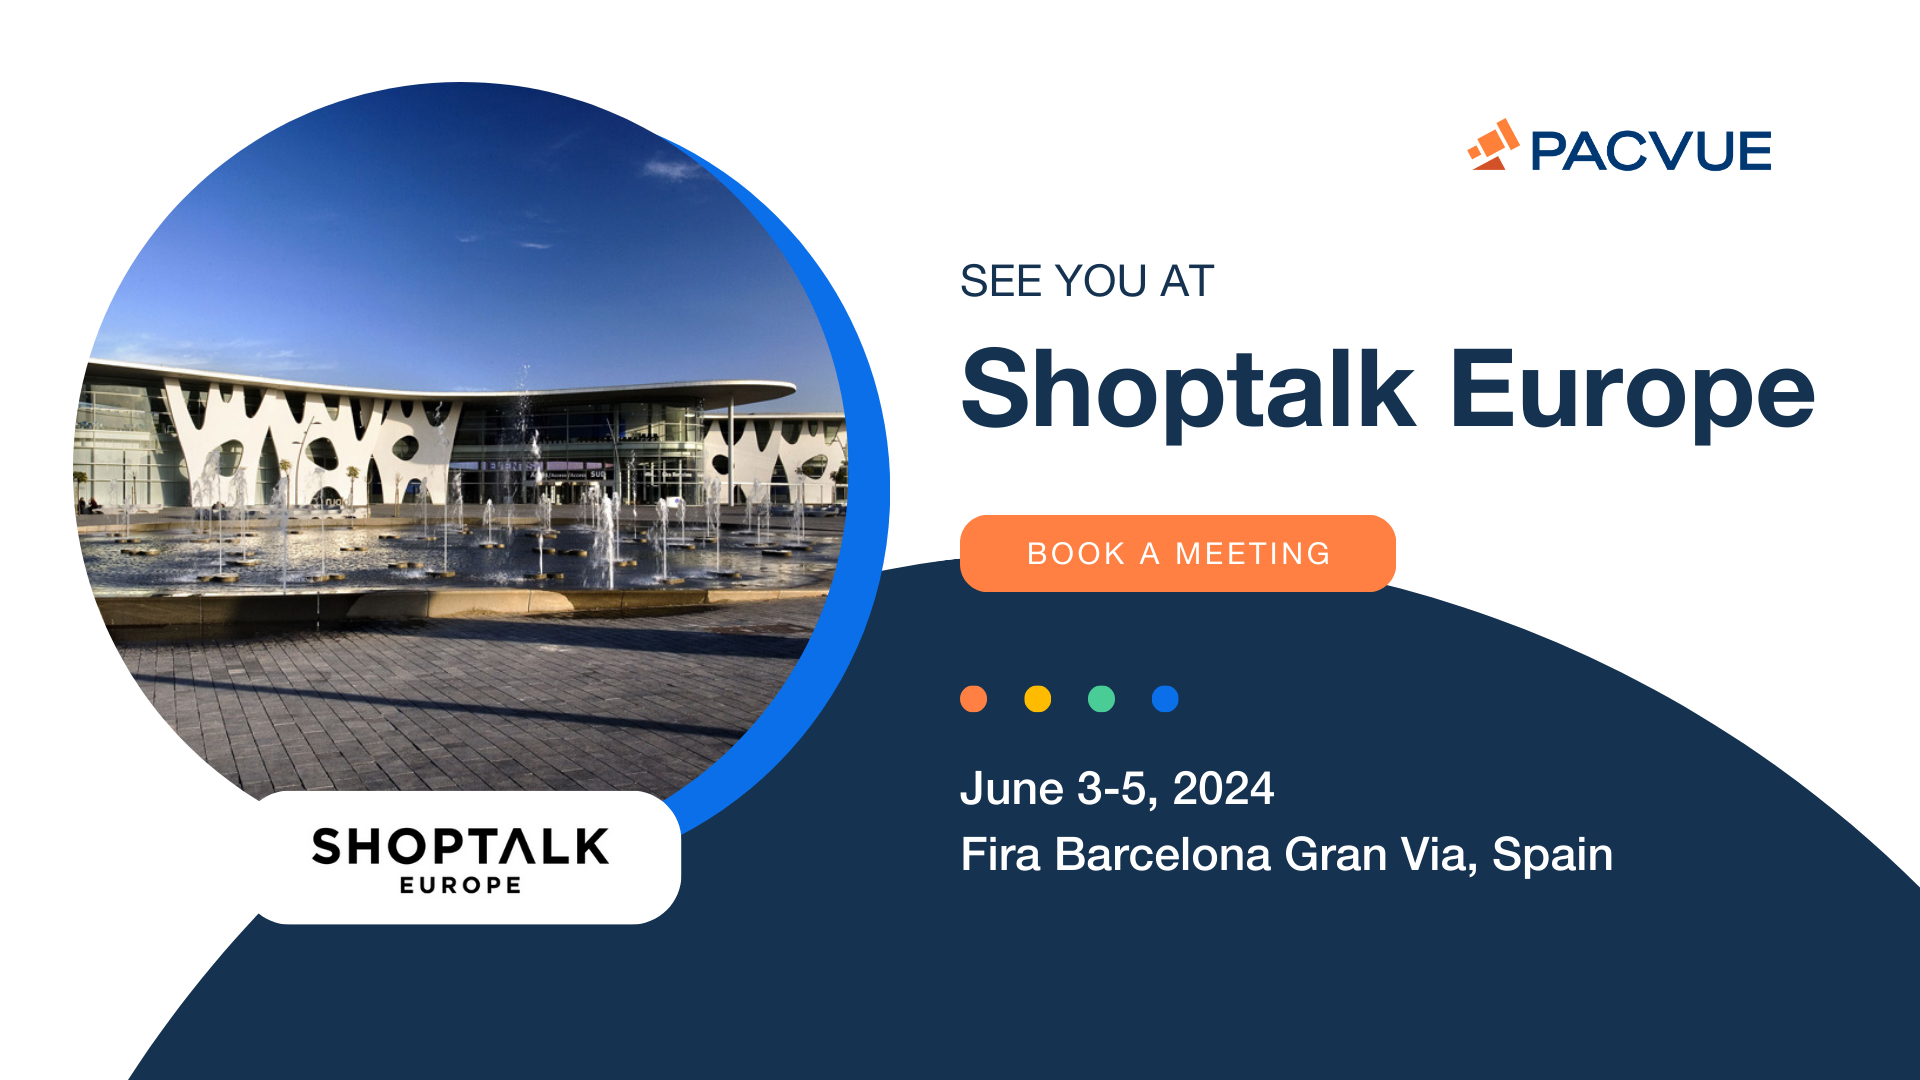 Pacvue en Shoptalk Europe del 3 al 5 de junio de 2024 en Barcelona